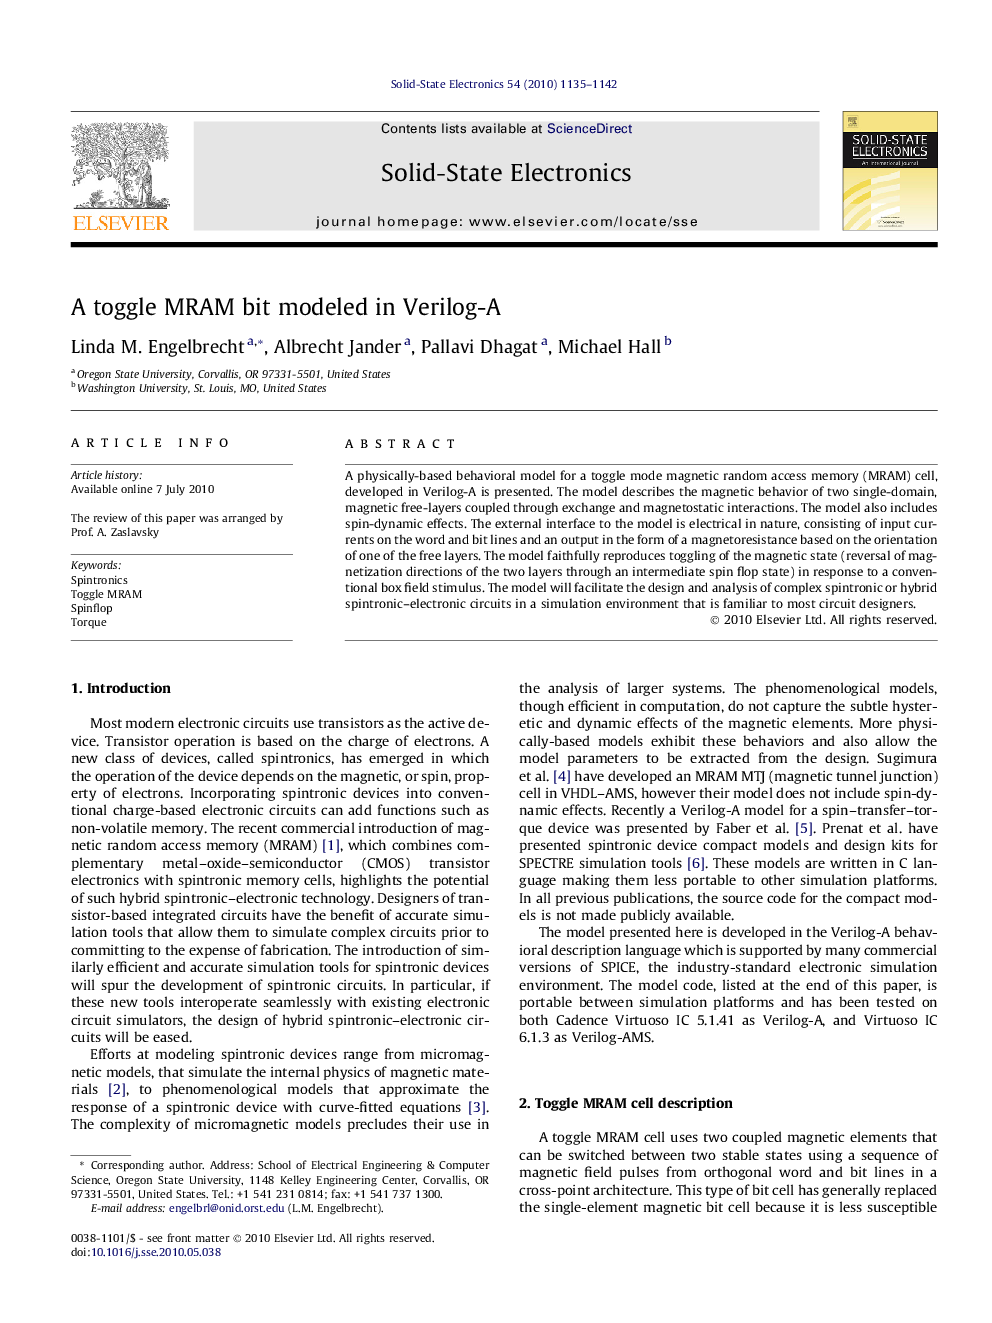 A toggle MRAM bit modeled in Verilog-A